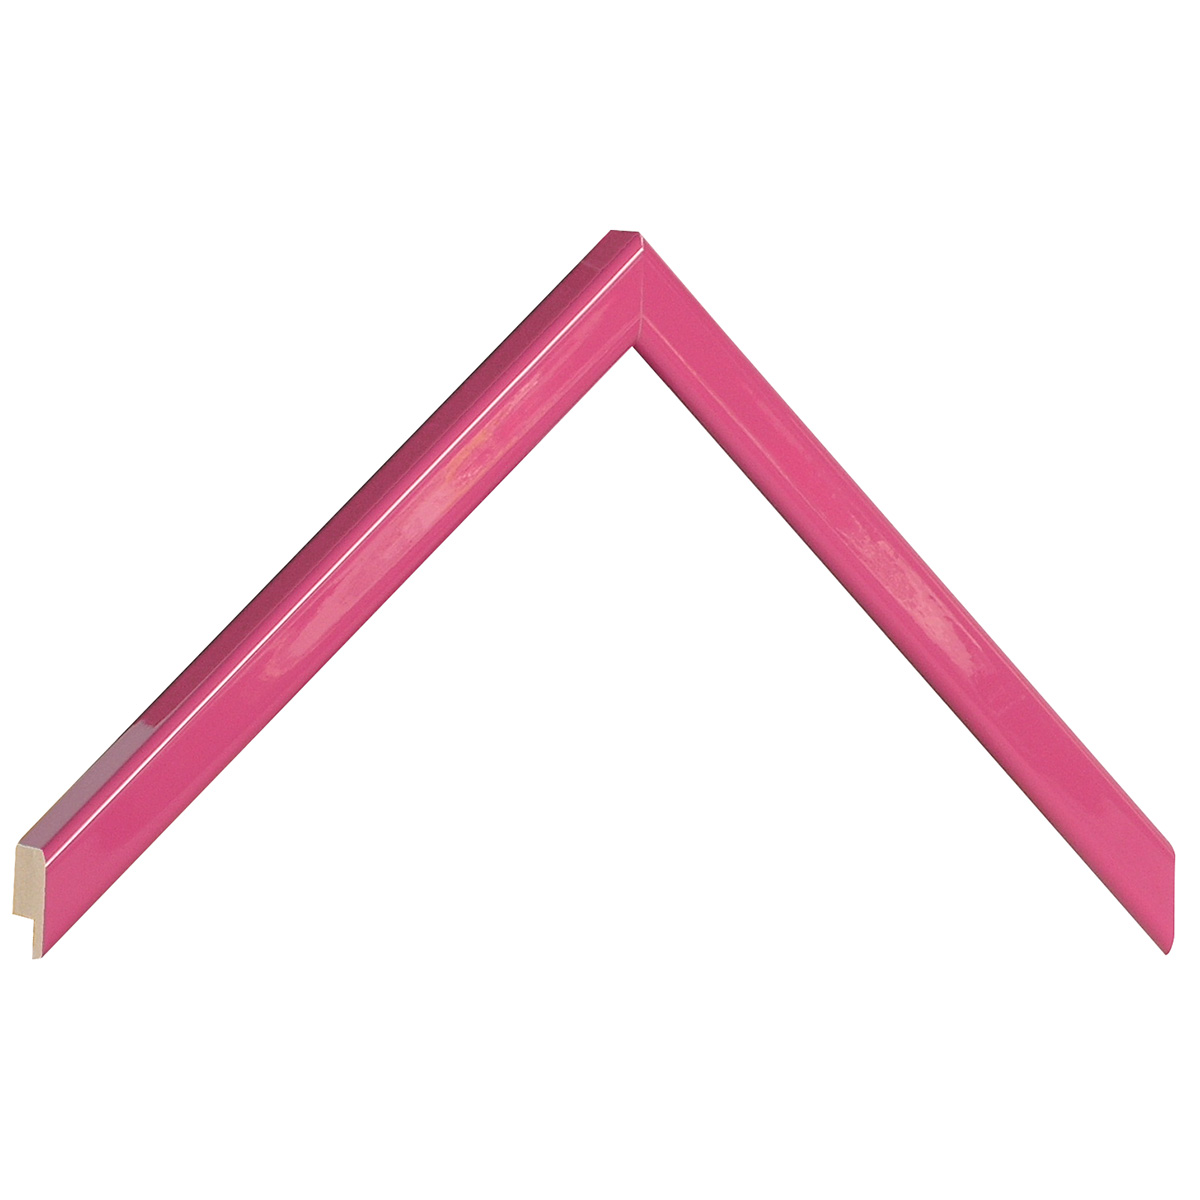 Bilderleiste keilgezinkte Pinie 14 mm breit - Rosa glänzend - Musterwinkel